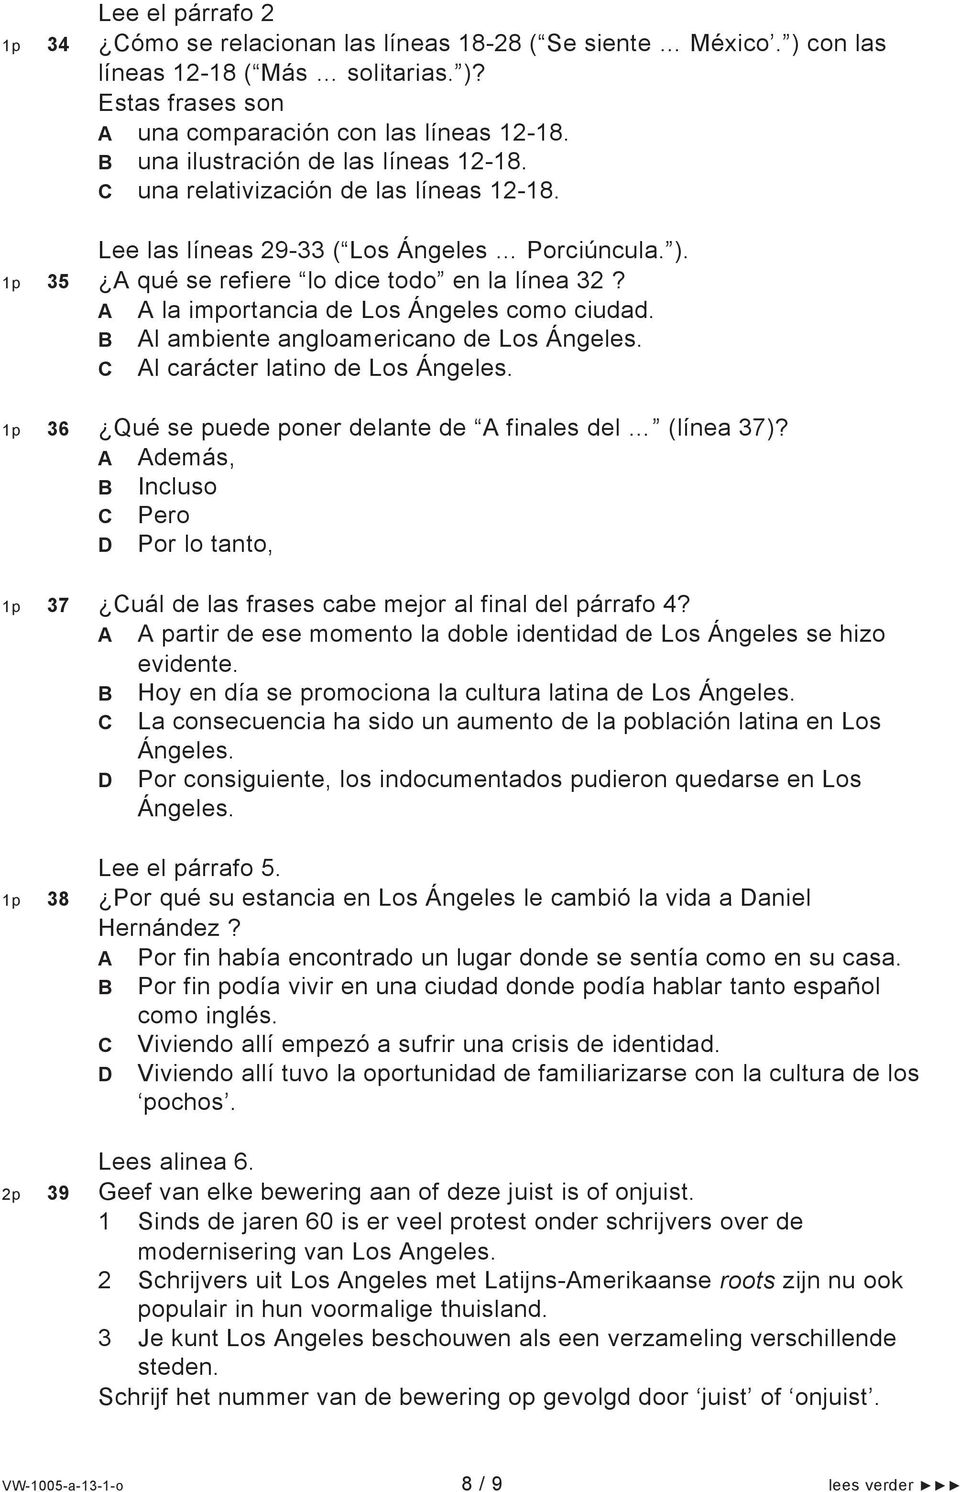 la importancia de Los Ángeles como ciudad. l ambiente angloamericano de Los Ángeles. l carácter latino de Los Ángeles. 36 Qué se puede poner delante de finales del (línea 37)?